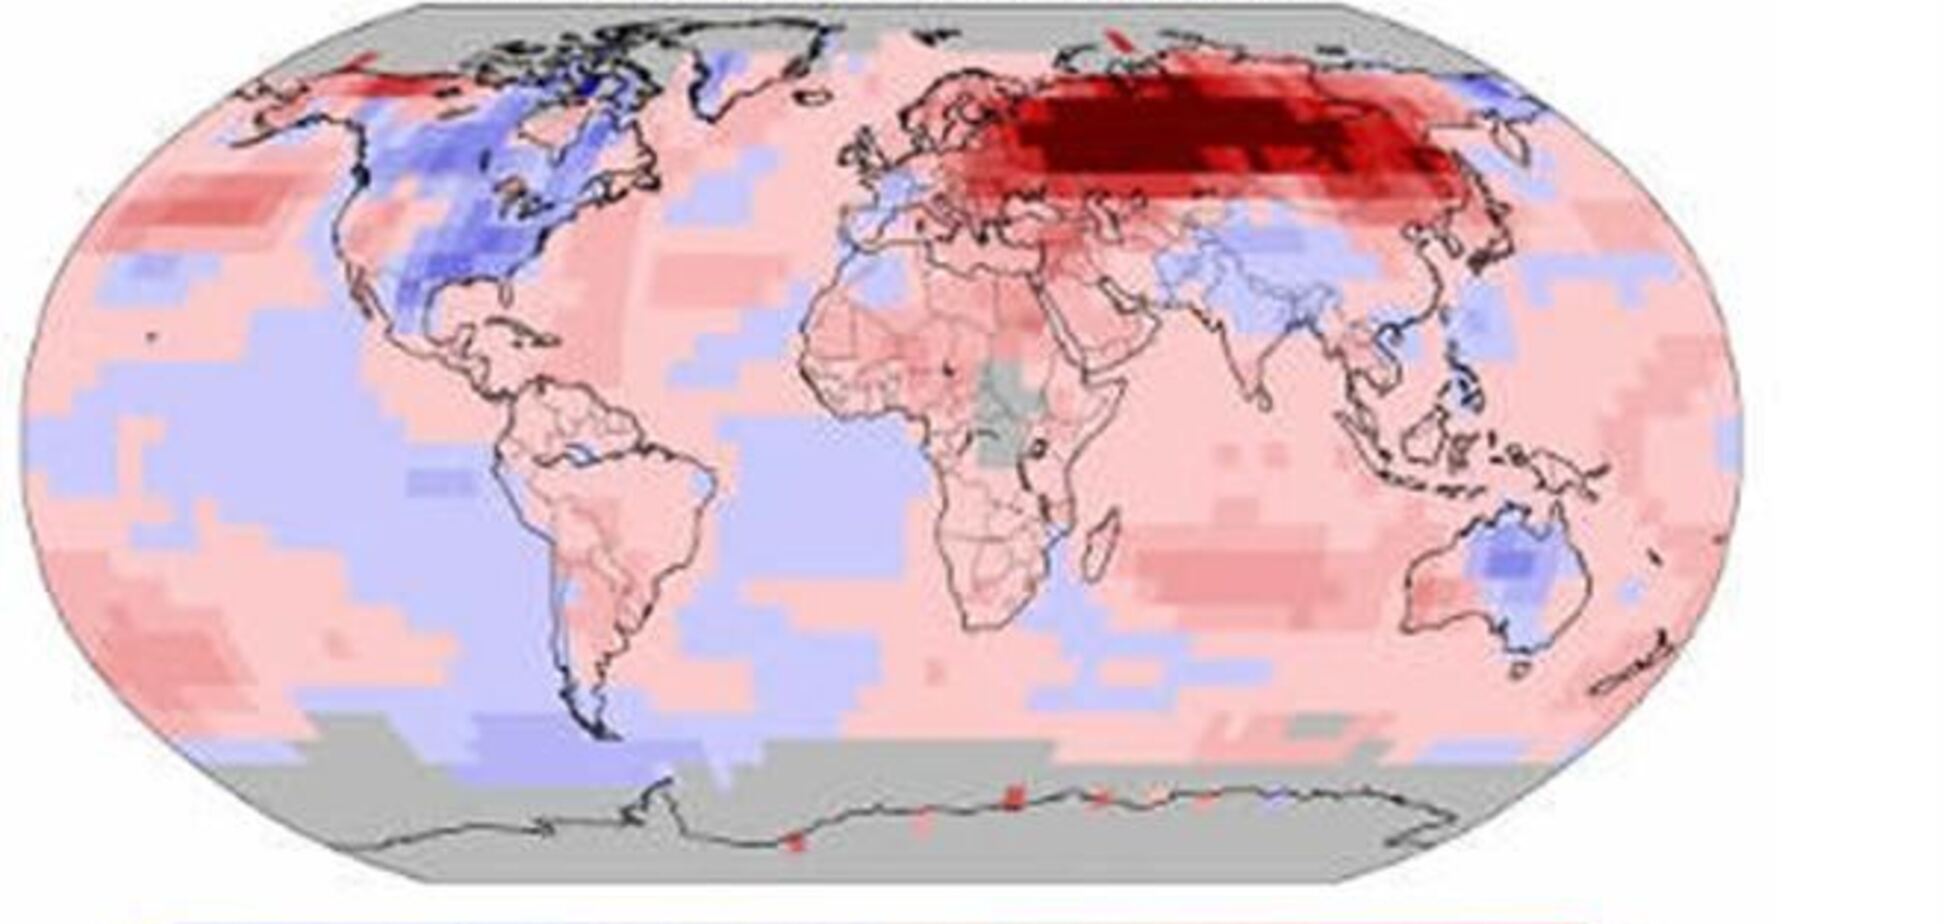 Ноябрь 2013 года признали самым теплым за всю историю наблюдений